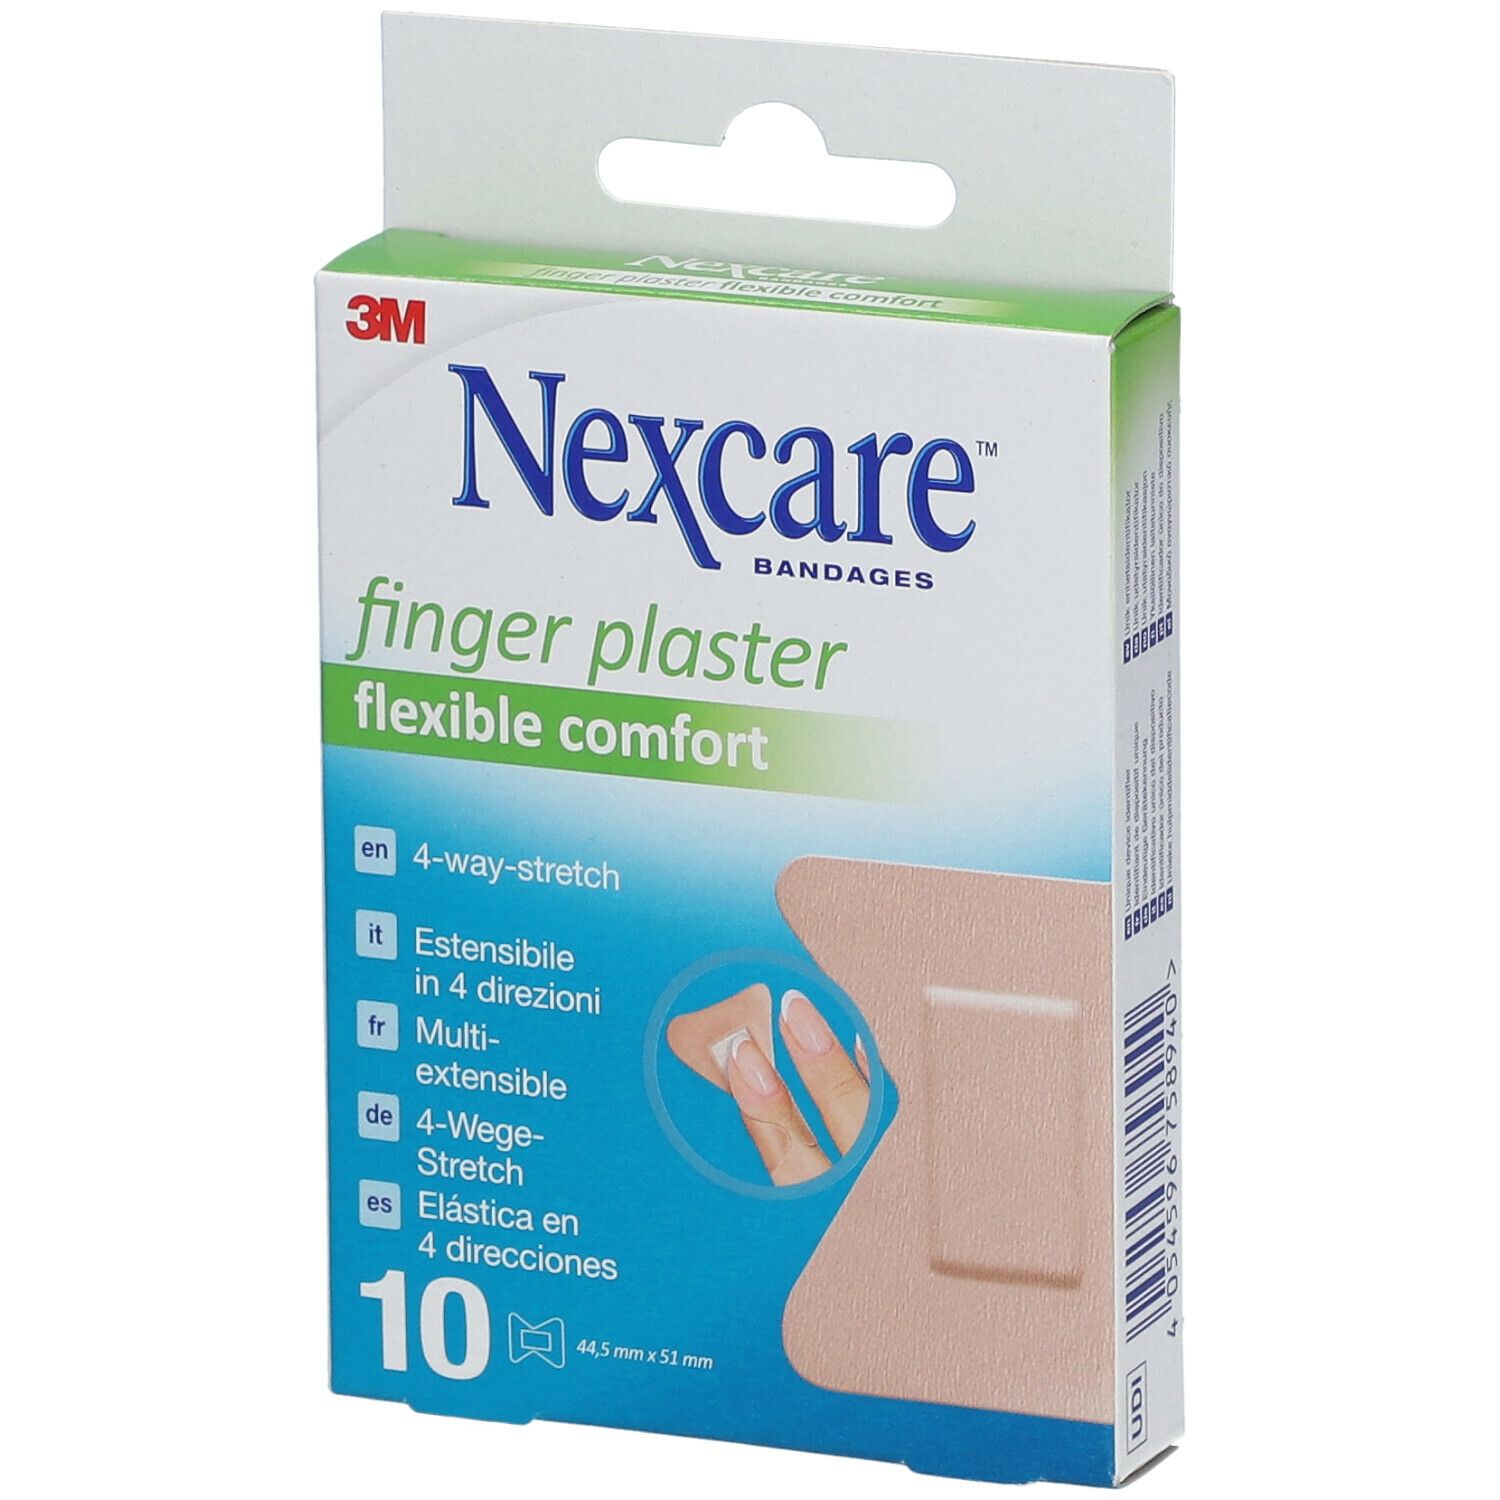 Nexcare™ Fingerpflaster Comfort Flexible , 44,5 mm x 51 mm, 10